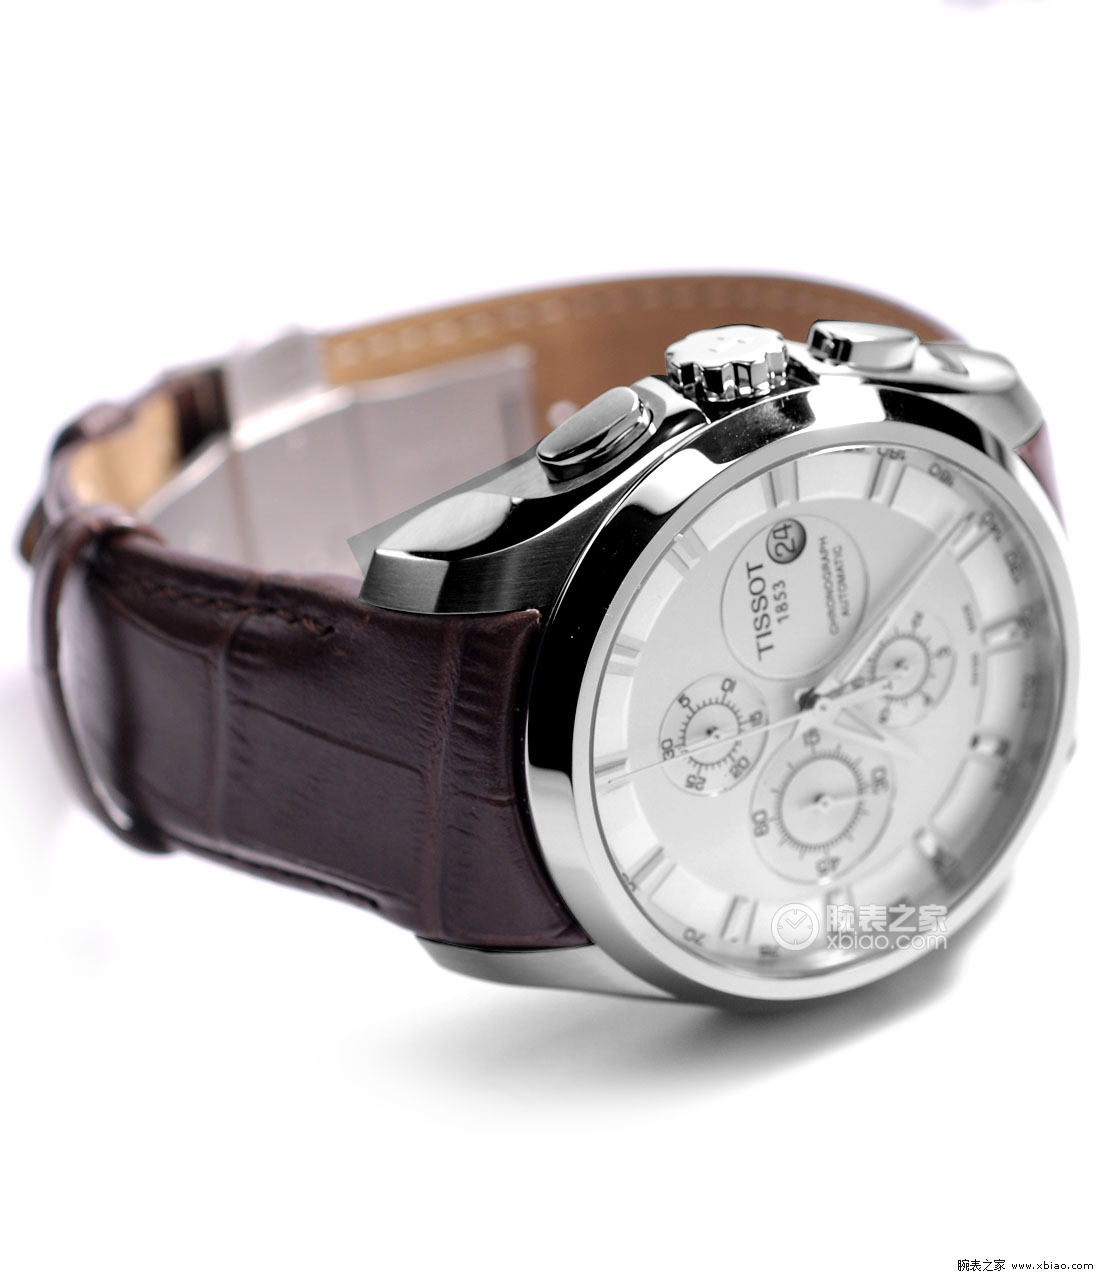 Мужские наручные часы Tissot. T035.627.16.031.00